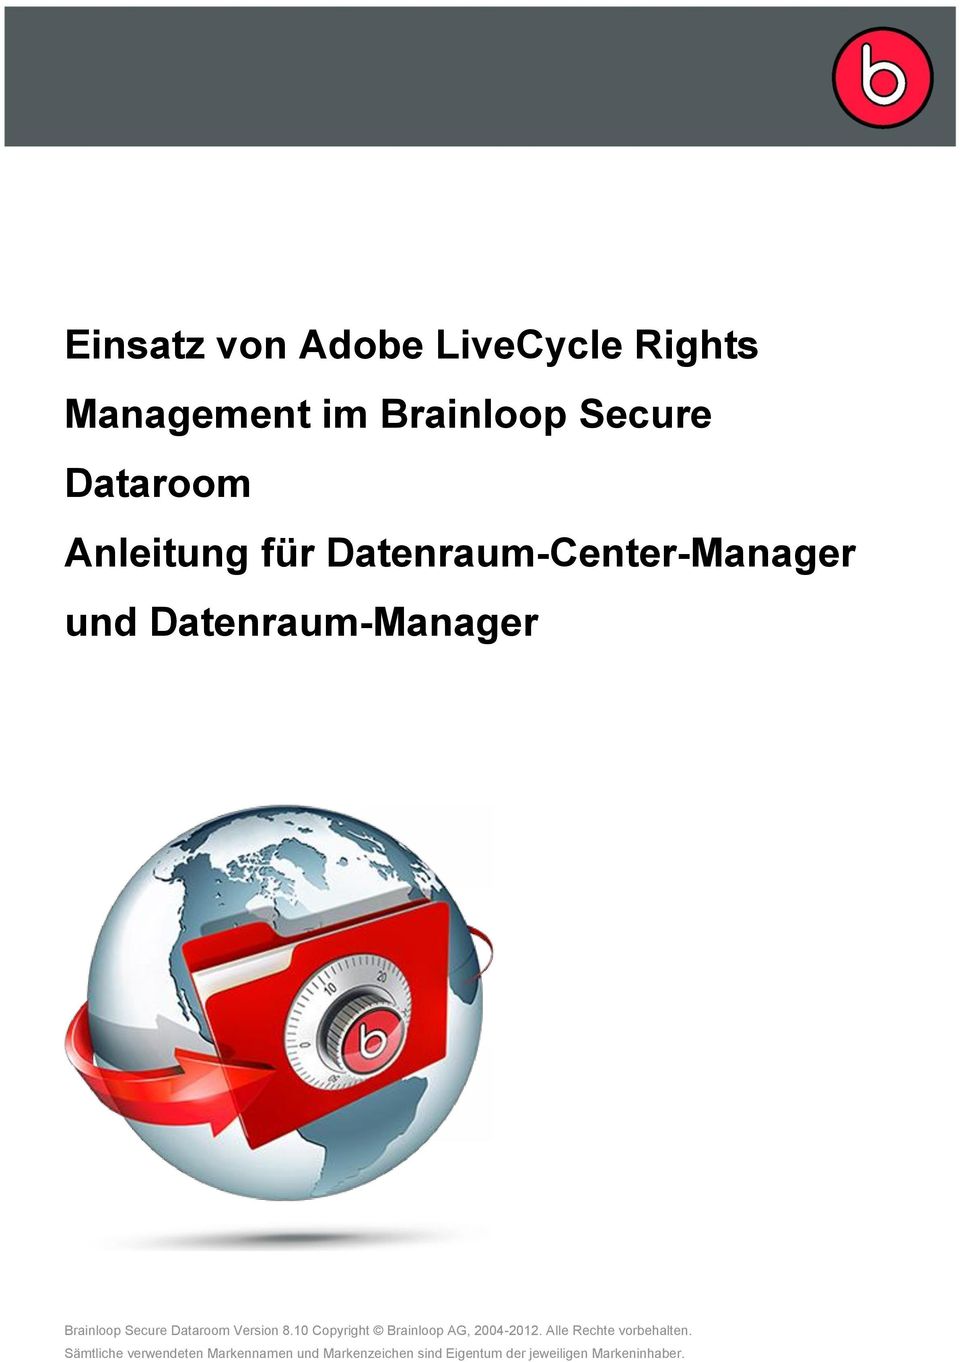 Dataroom Version 8.10 Copyright Brainloop AG, 2004-2012. Alle Rechte vorbehalten.